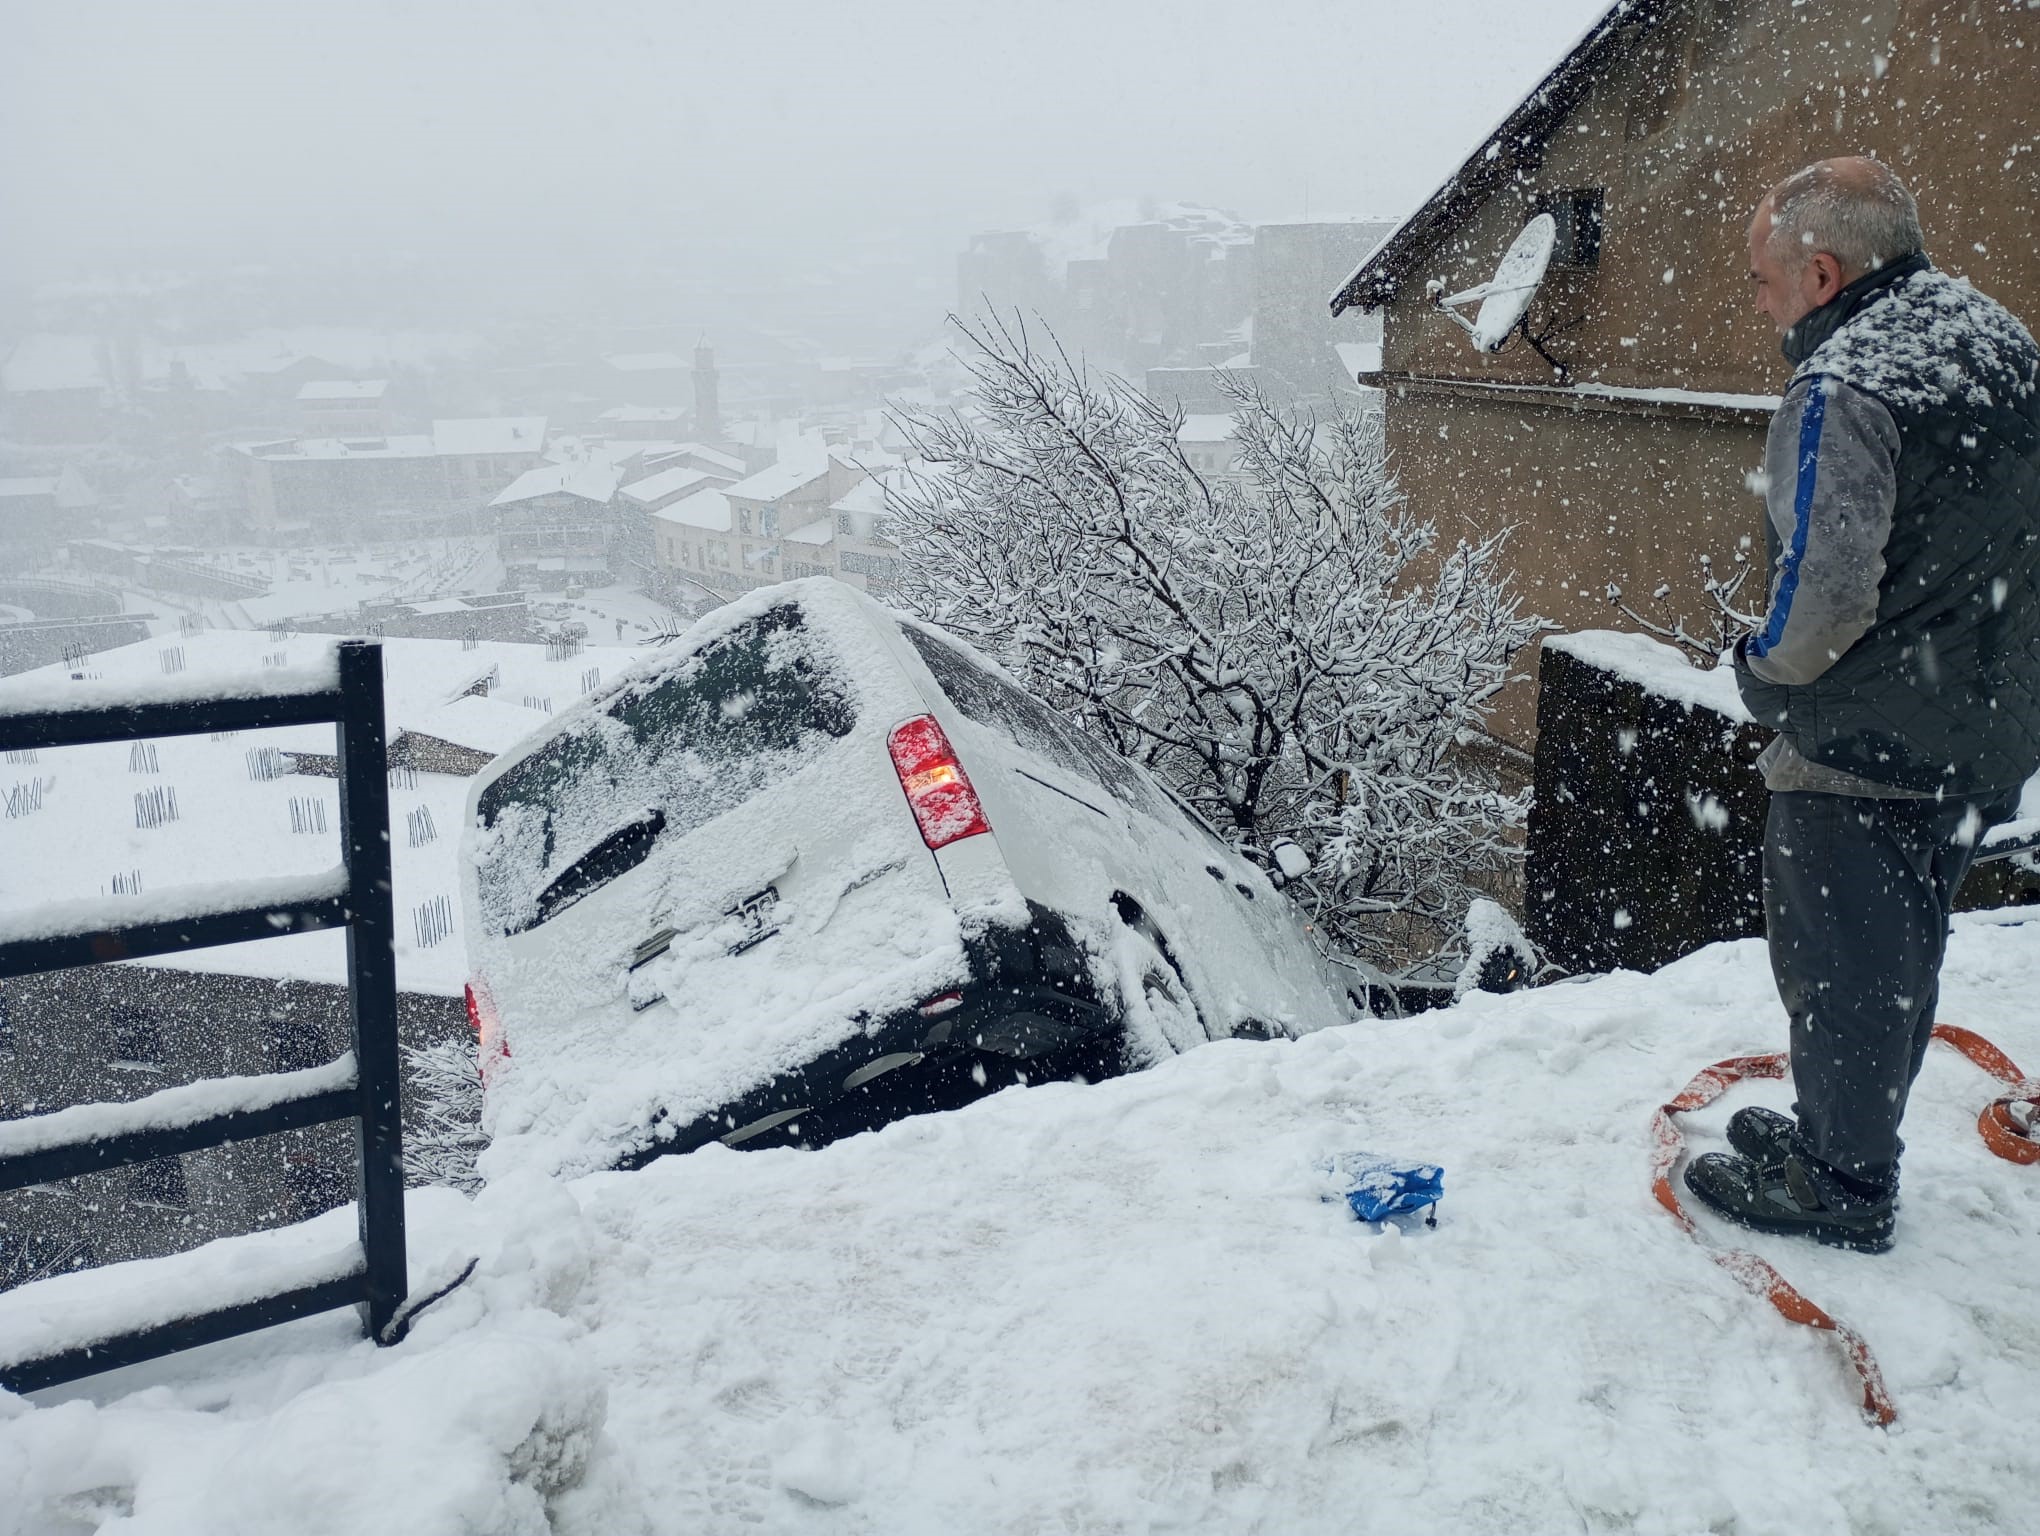 Bitlis'te 10 aracın karıştığı zincirleme kazada 16 kişi yaralandı